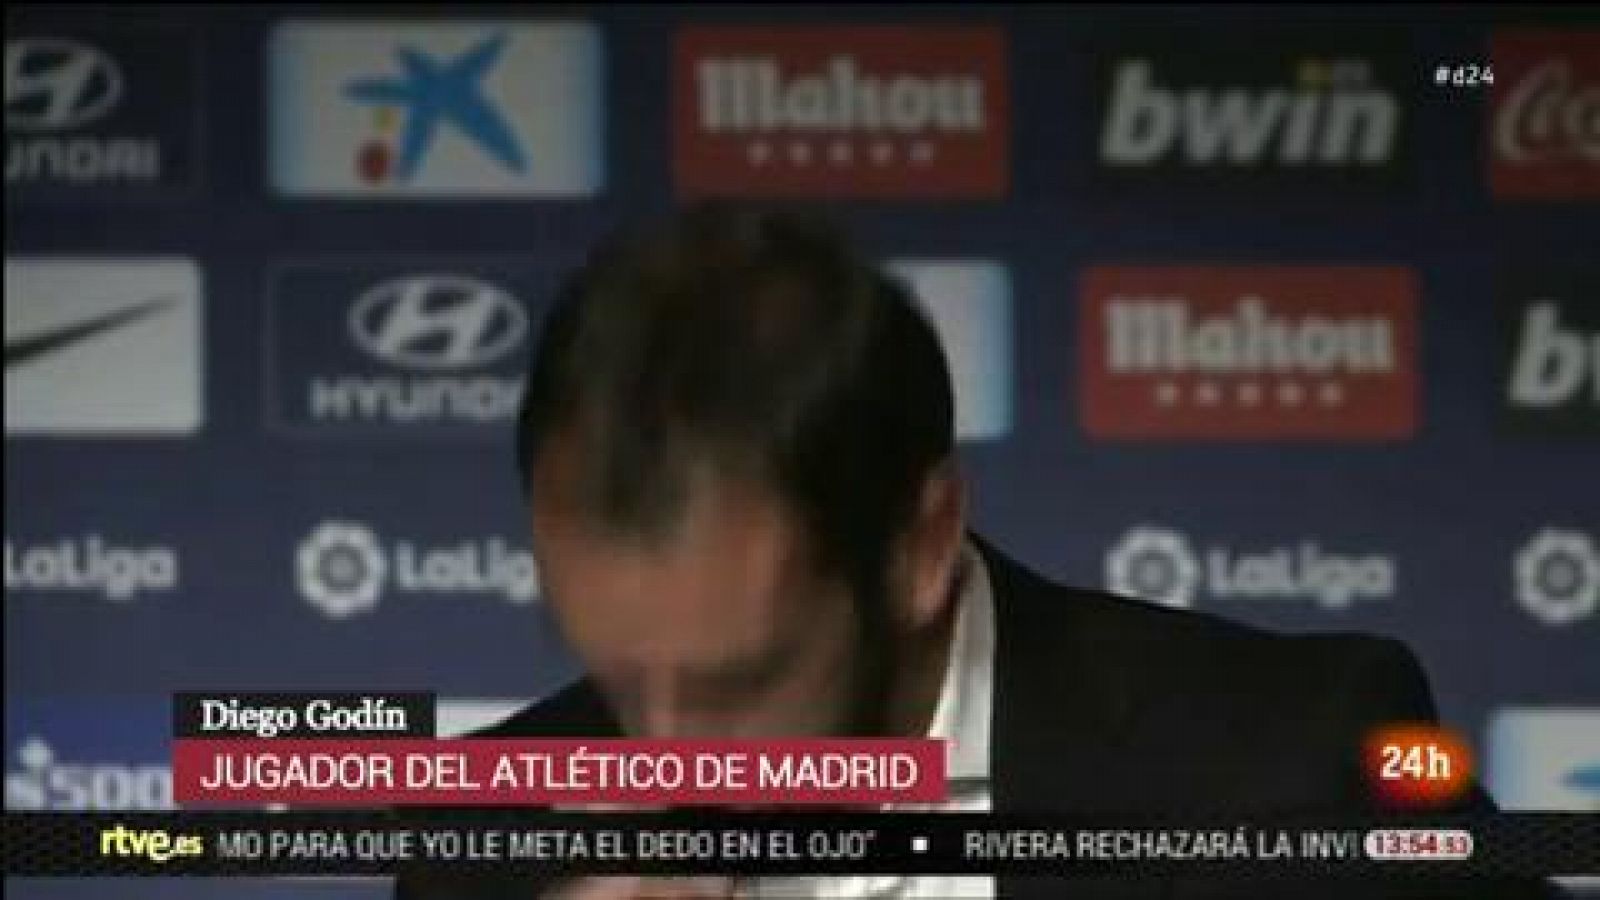 El defensa uruguayo Diego Godín ha anunciado este martes que  abandonará el Atlético de Madrid al final de la presente temporada  tras defender la camiseta rojiblanca los últimos nueve años y  conquistar un total de ocho títulos: una Liga (2014), una